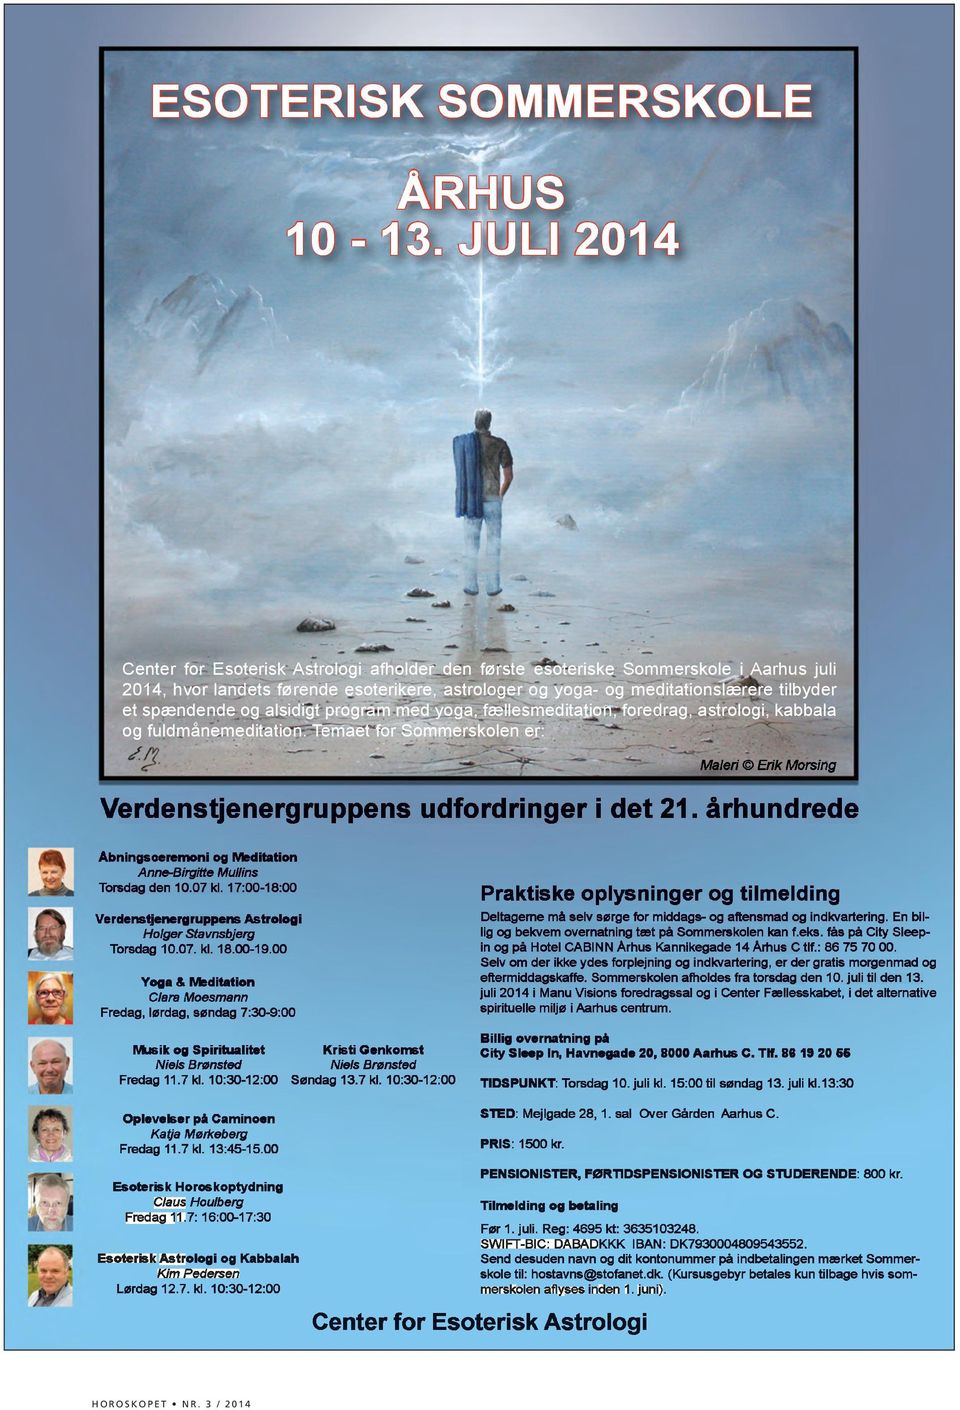 JULI 2014 Center for Esoterisk Astrologi afholder den første esoteriske Sommerskole i Aarhus juli 2014, hvor landets